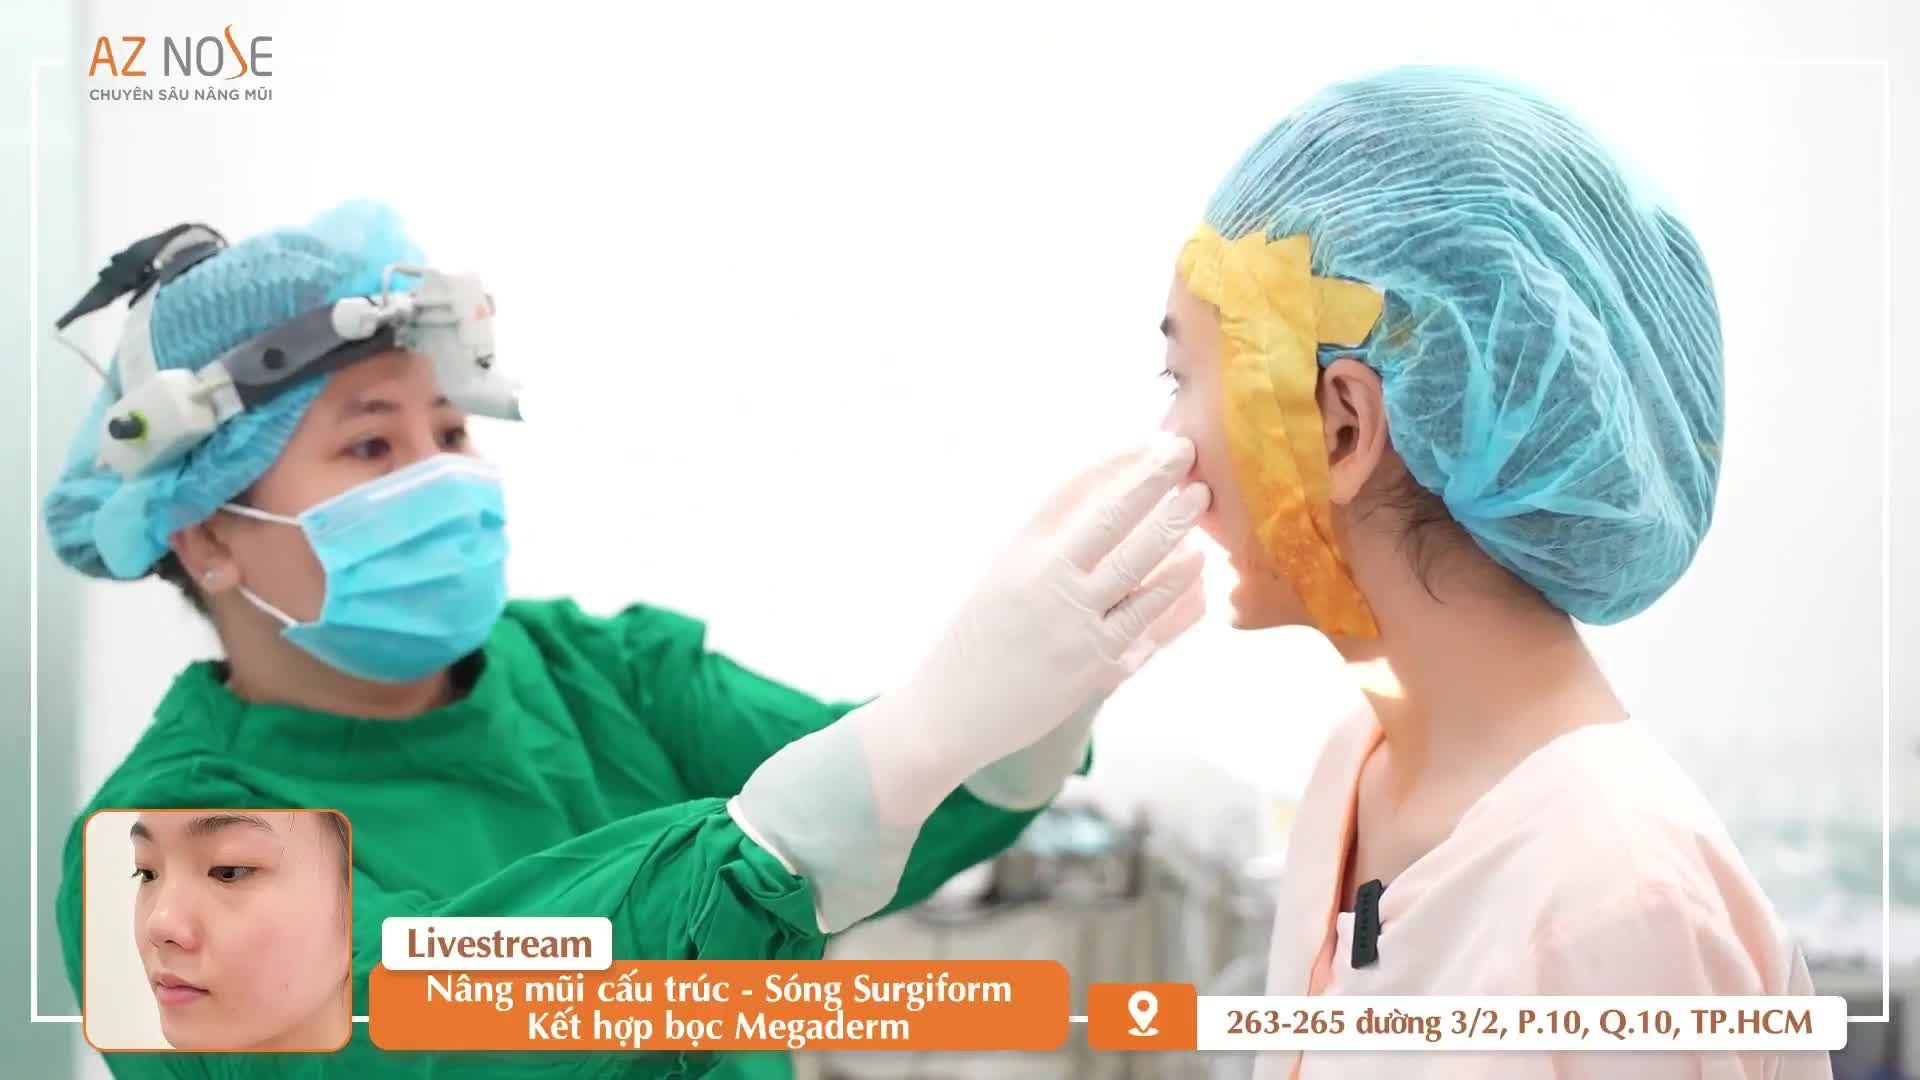 Bác sĩ Hoàng Nhung giải đáp "tất tần tật" băn khoăn của khách hàng khi xem dáng mũi